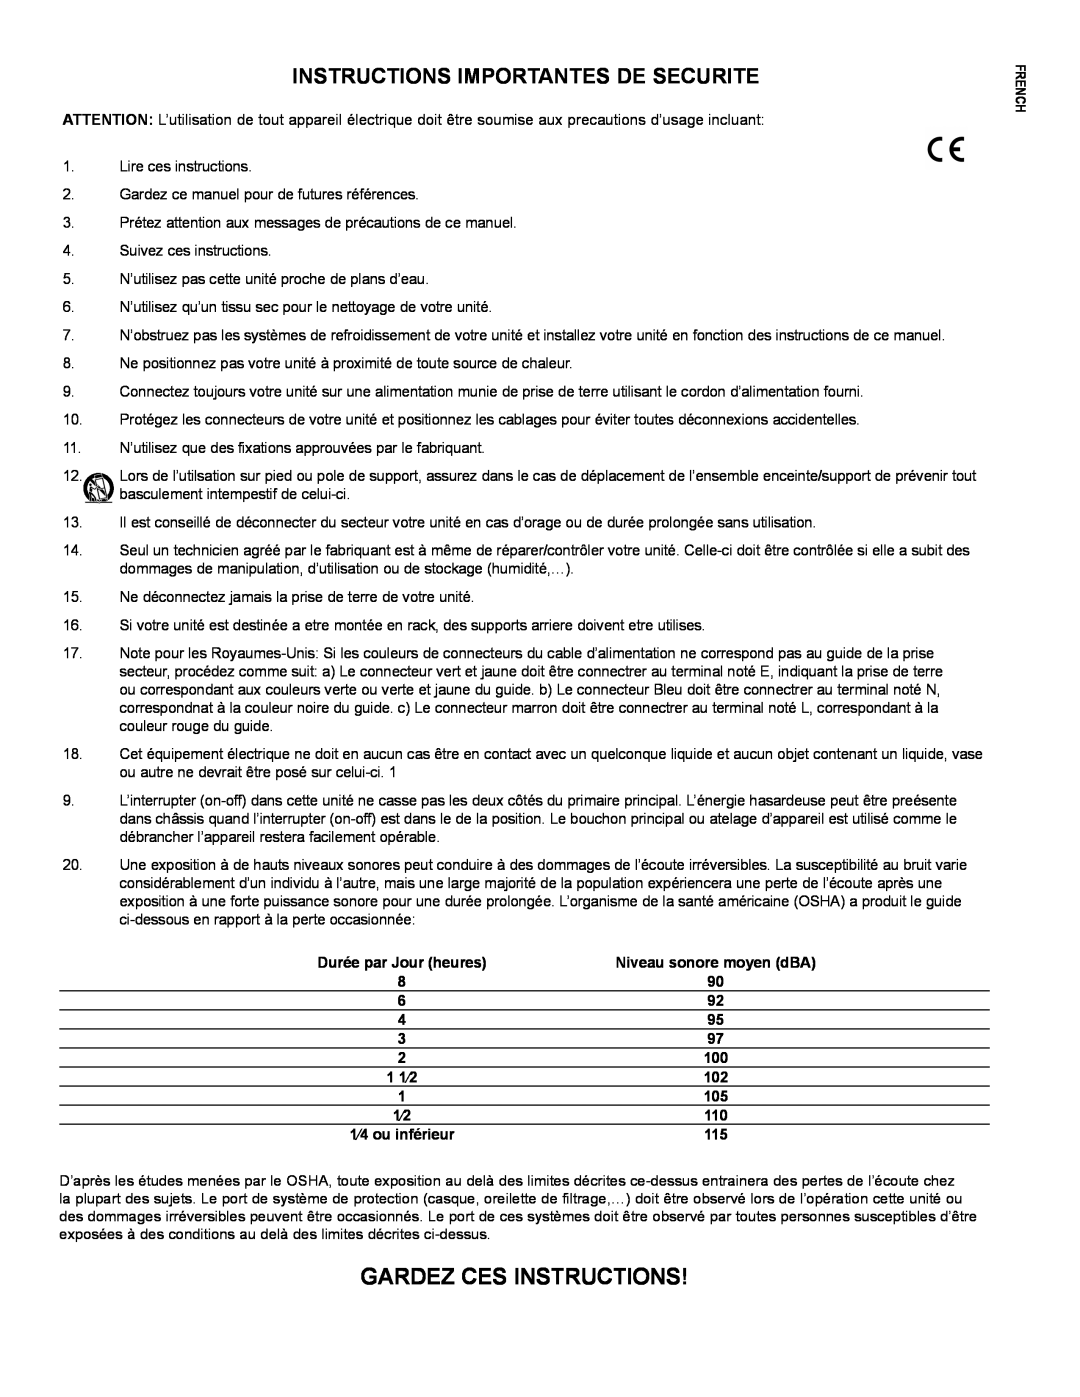 Peavey PR 15 D manual Gardez Ces Instructions, Instructions Importantes De Securite, Niveau sonore moyen dBA, 1 1⁄2, French 